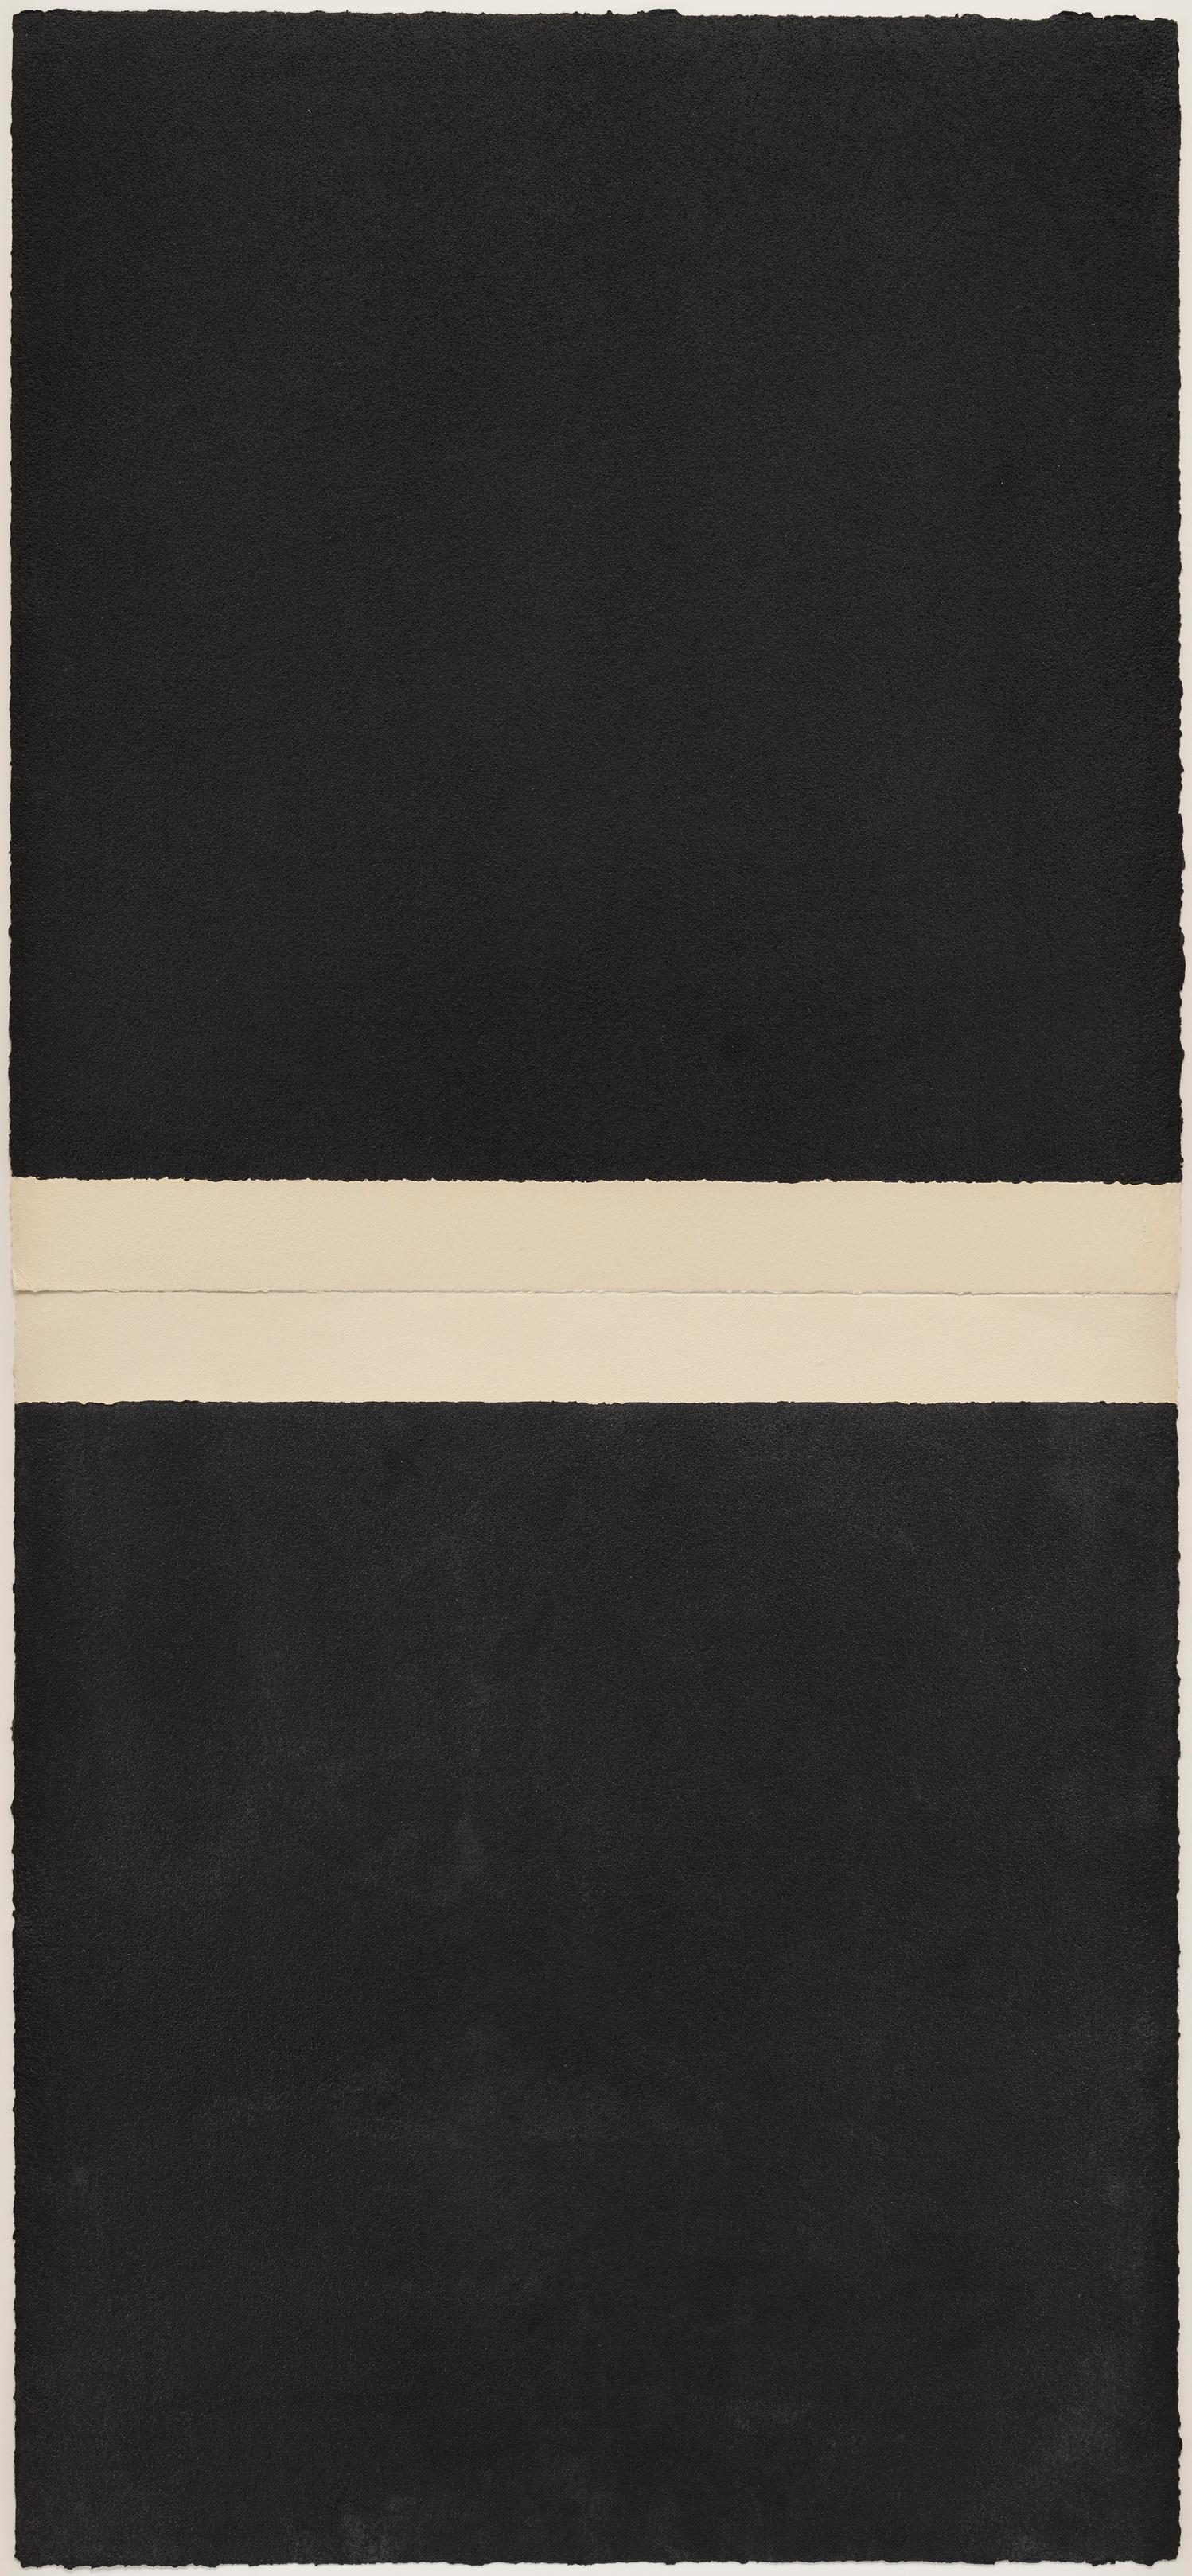 Richard Serra Abstract Print - WM III